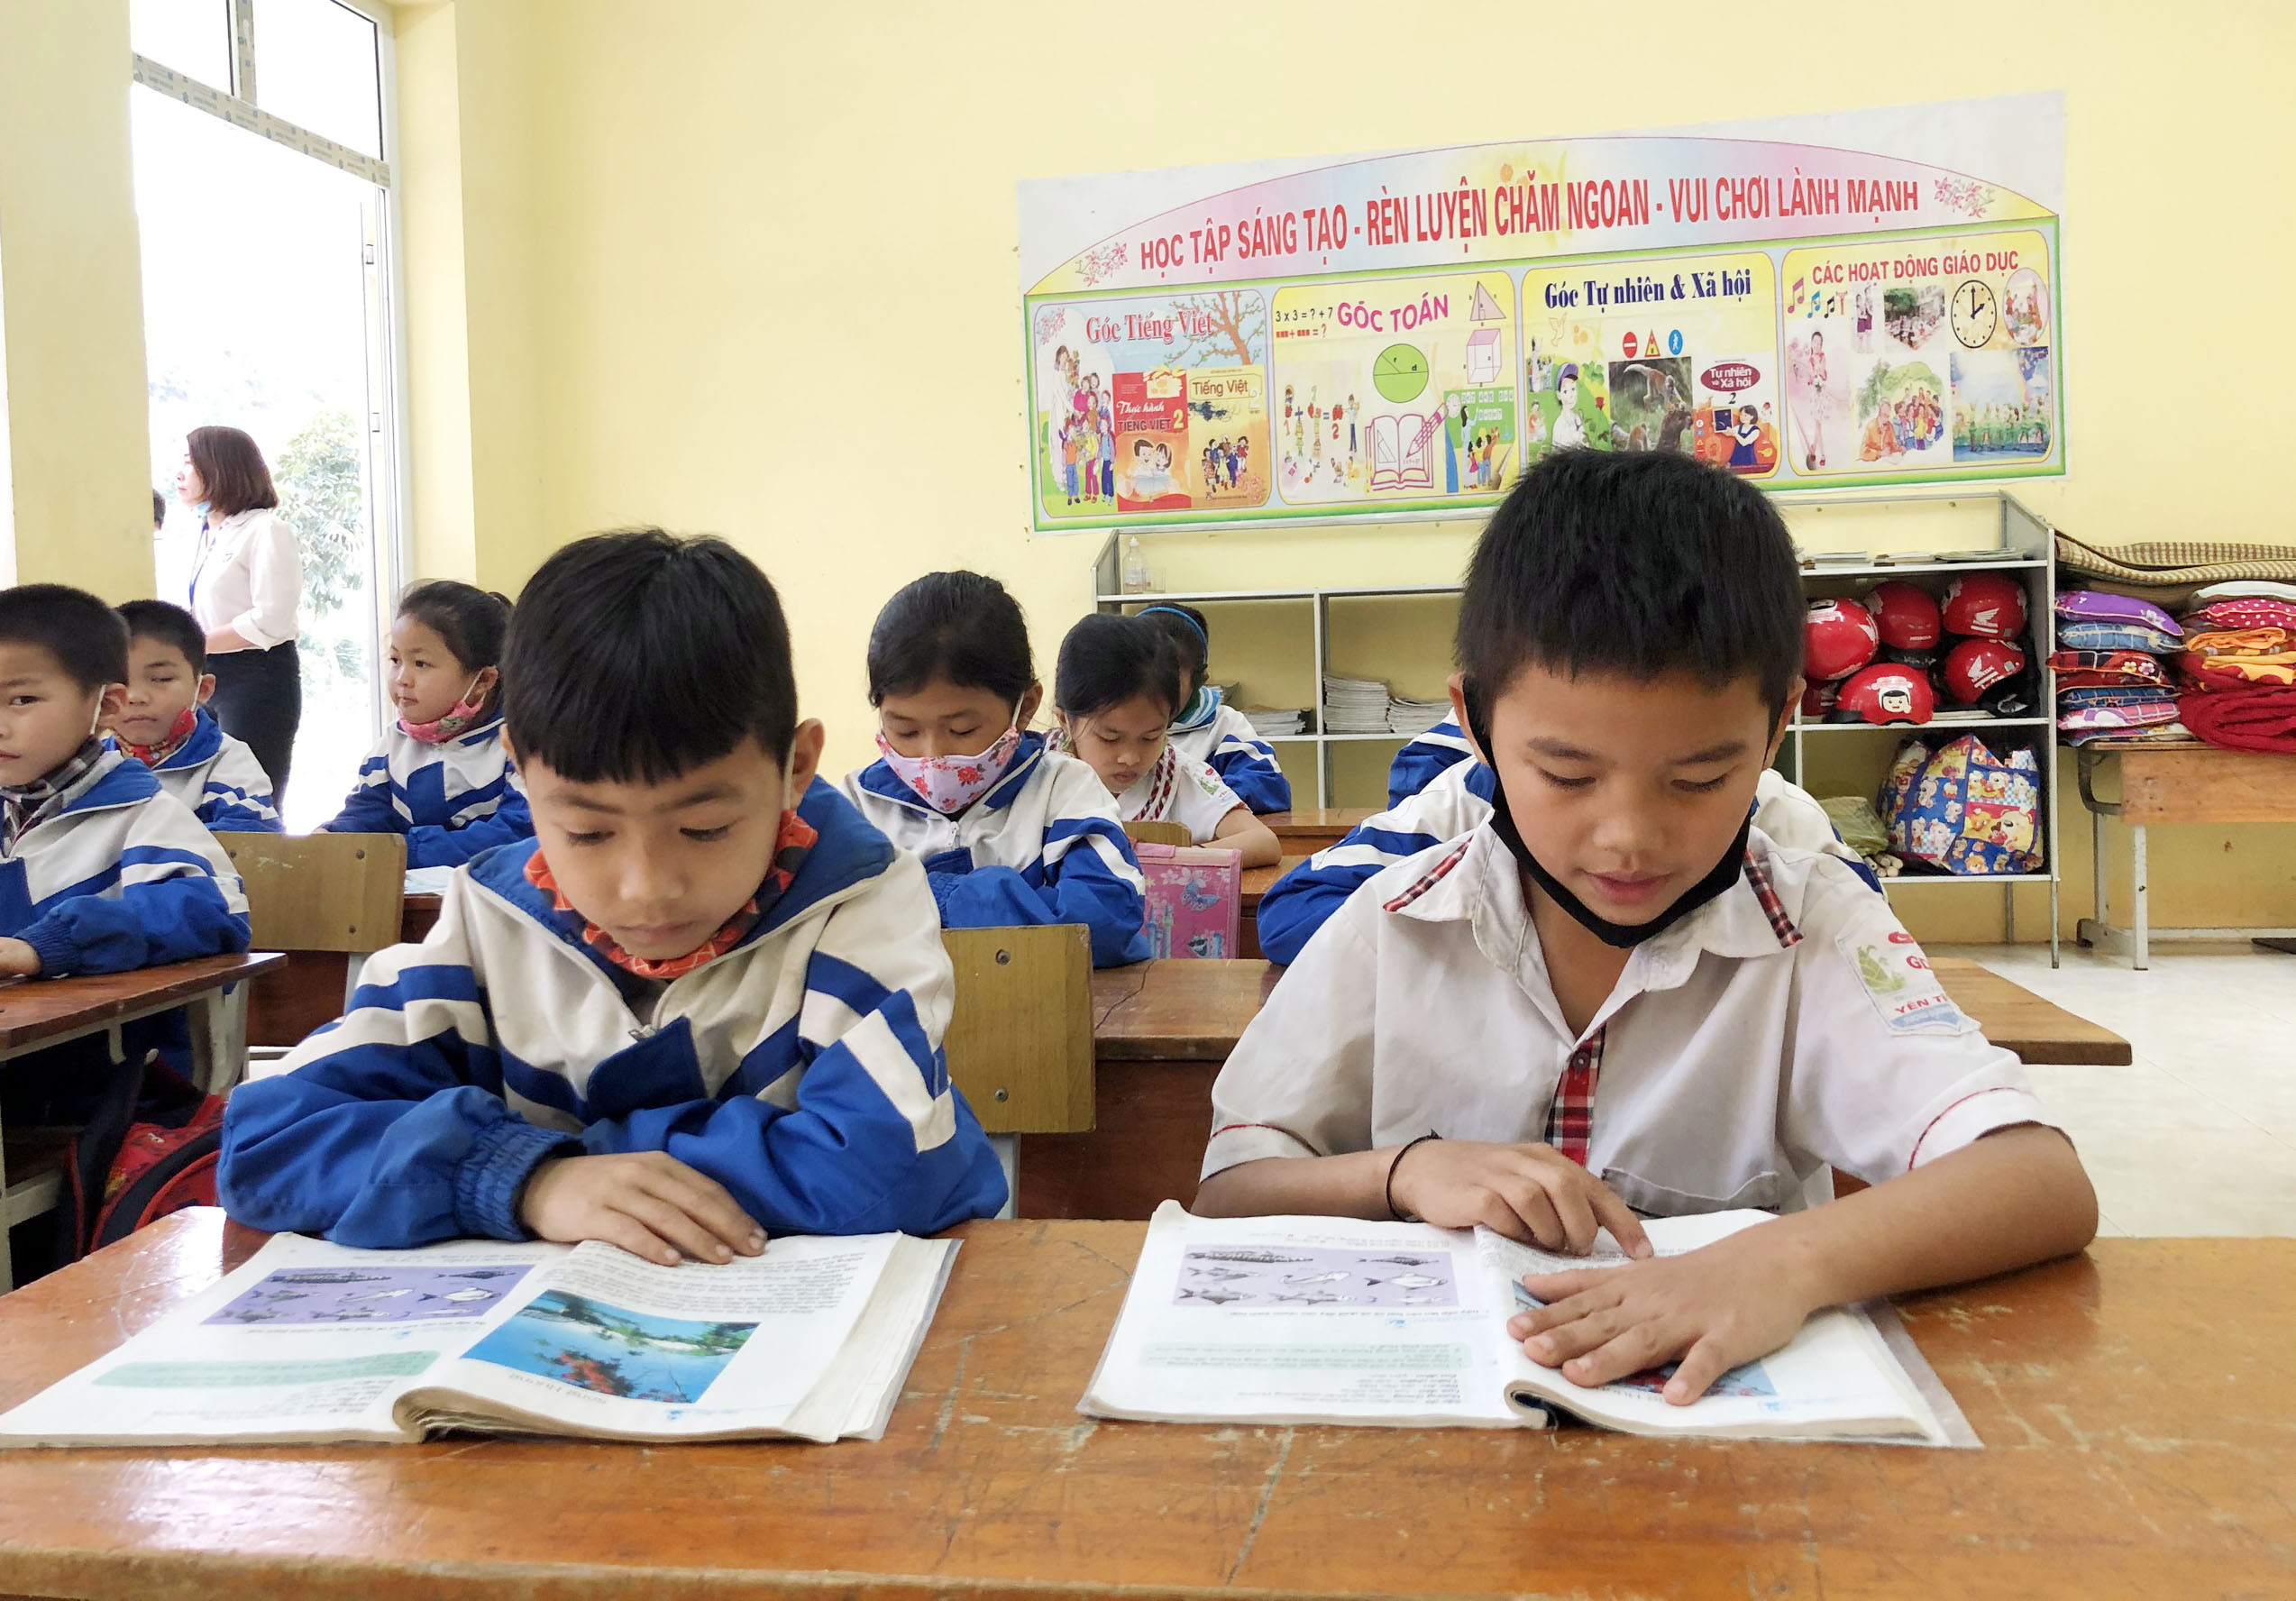 Từ hiệu quả của mô hình này, sắp tới Nghệ An sẽ tiếp tục rà sát để xây dựng các mô hình Trường PT DTBT tiểu học trên toàn tỉnh. Đây sẽ là căn cứ để các trường được đổi tên trường và được thực hiện các chế độ chính sách theo như quy định của trường bán trú.